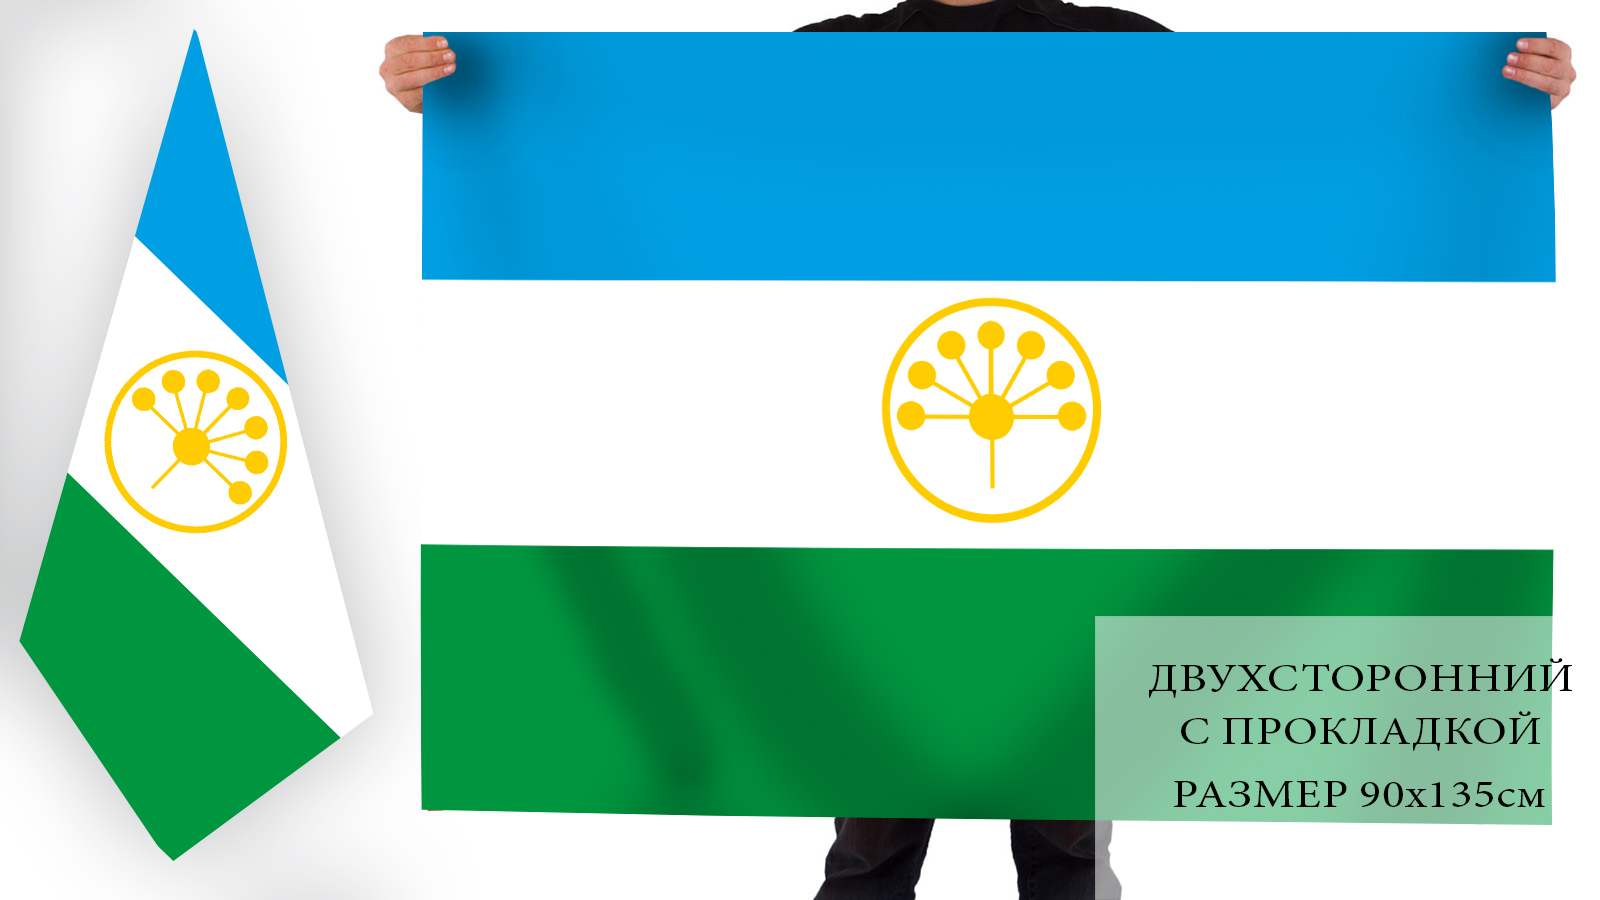 Флаг Башкортостана 